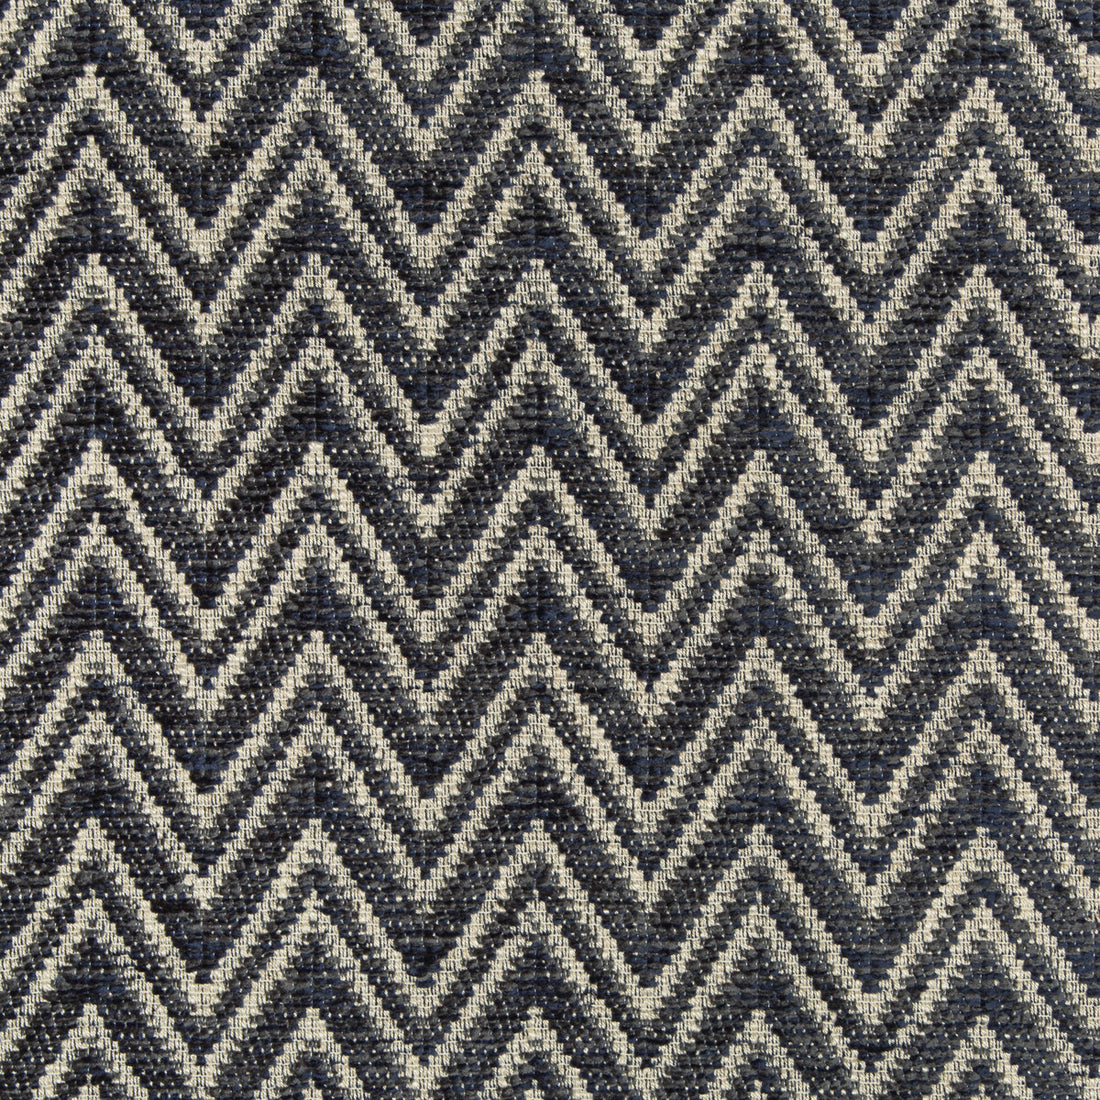 Kravet Design fabric in 35713-50 color - pattern 35713.50.0 - by Kravet Design